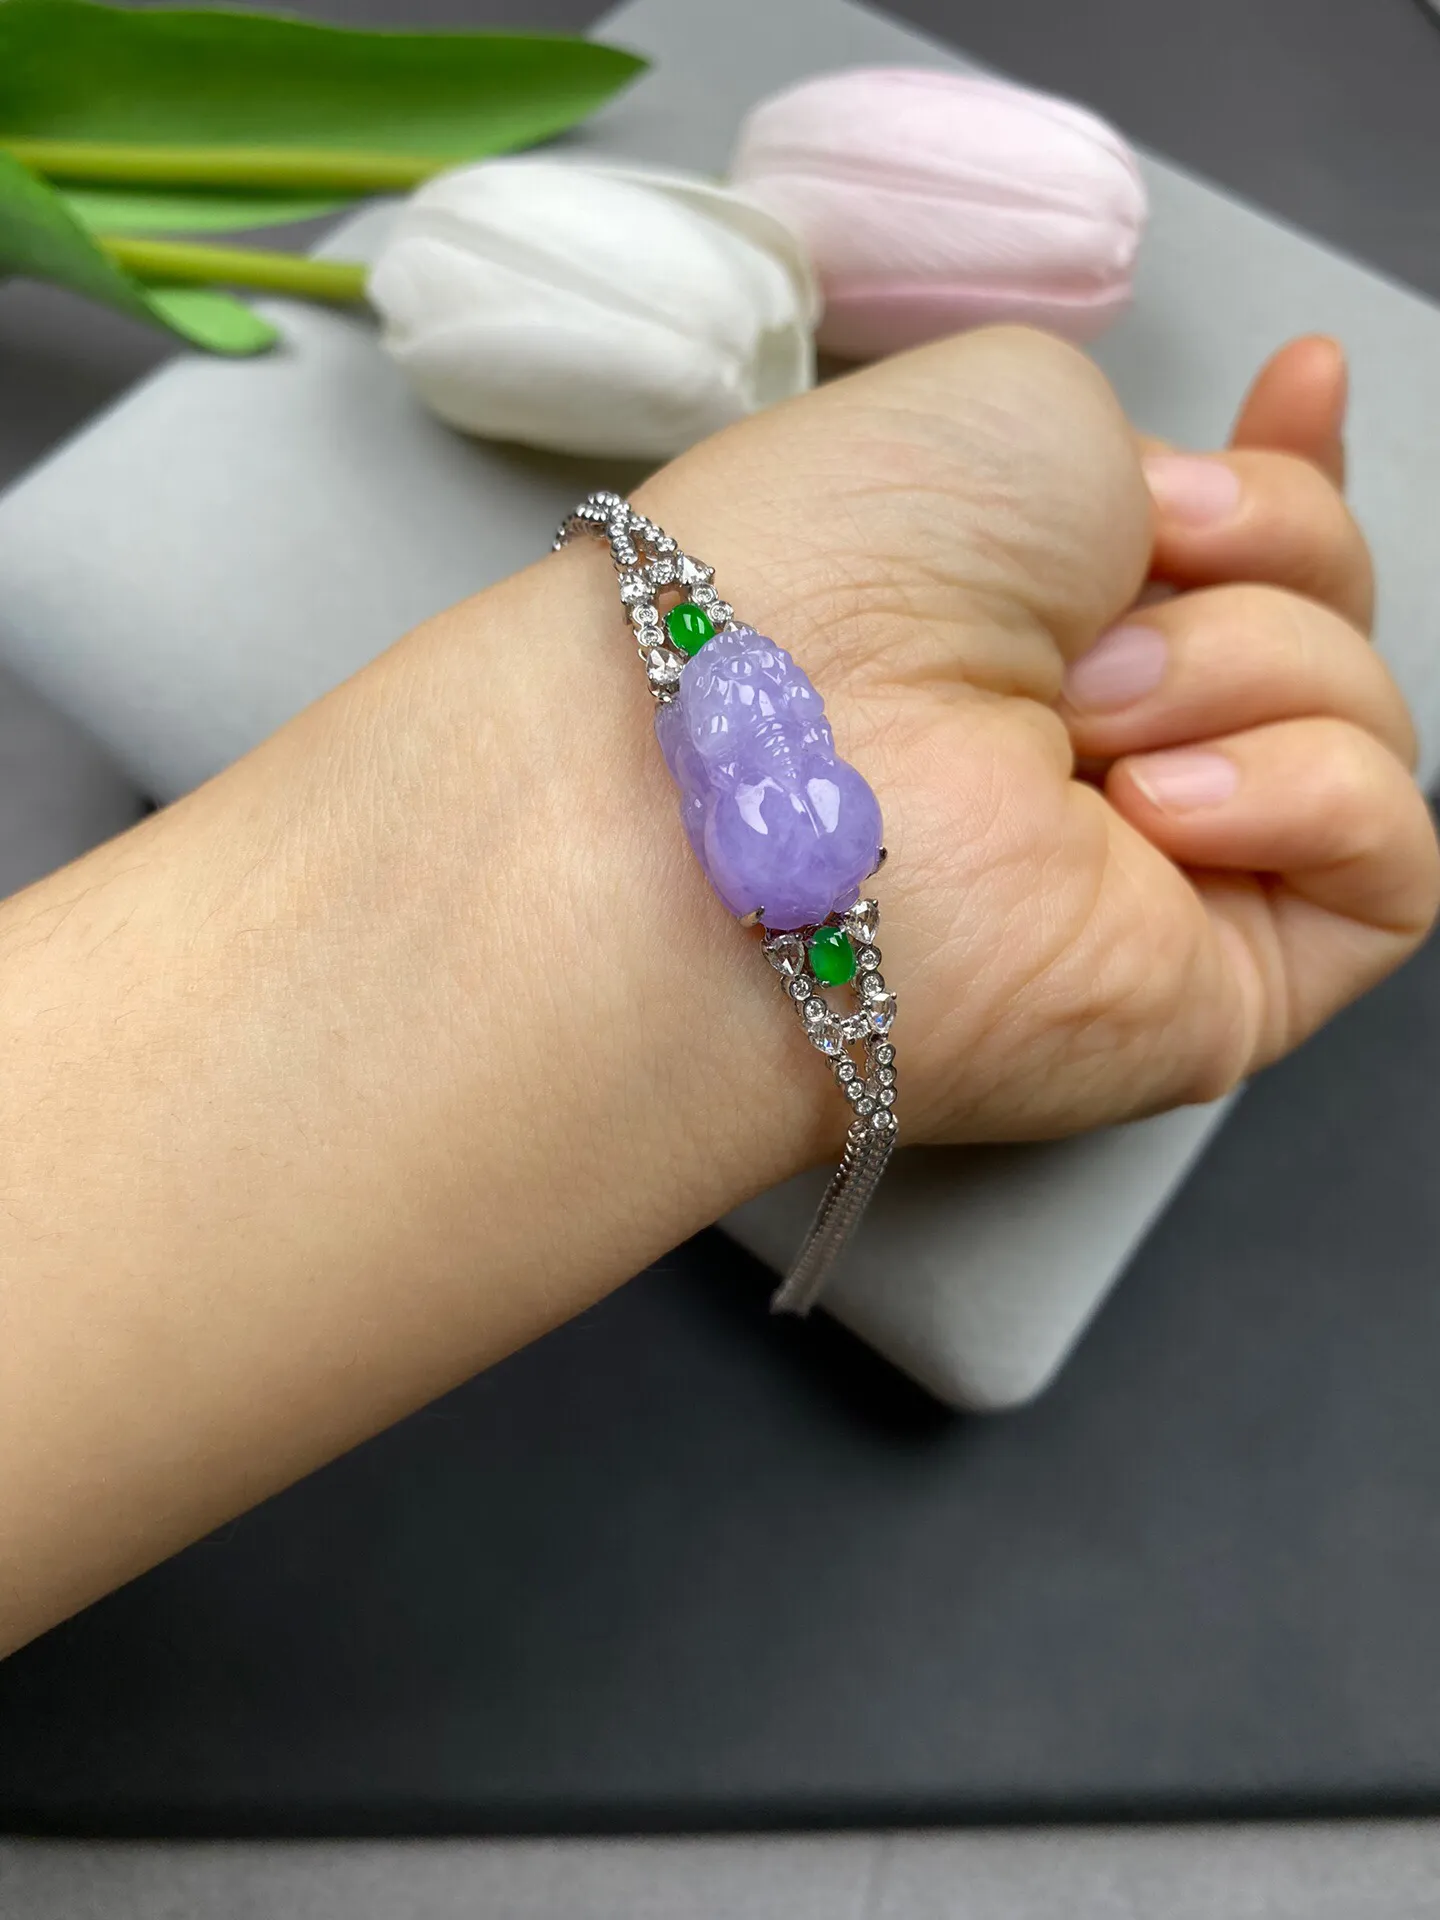 冰糯种紫罗兰貔貅手链 总长度约125毫米裸石19-11.7-9.8毫米 色彩艳丽 独特精美